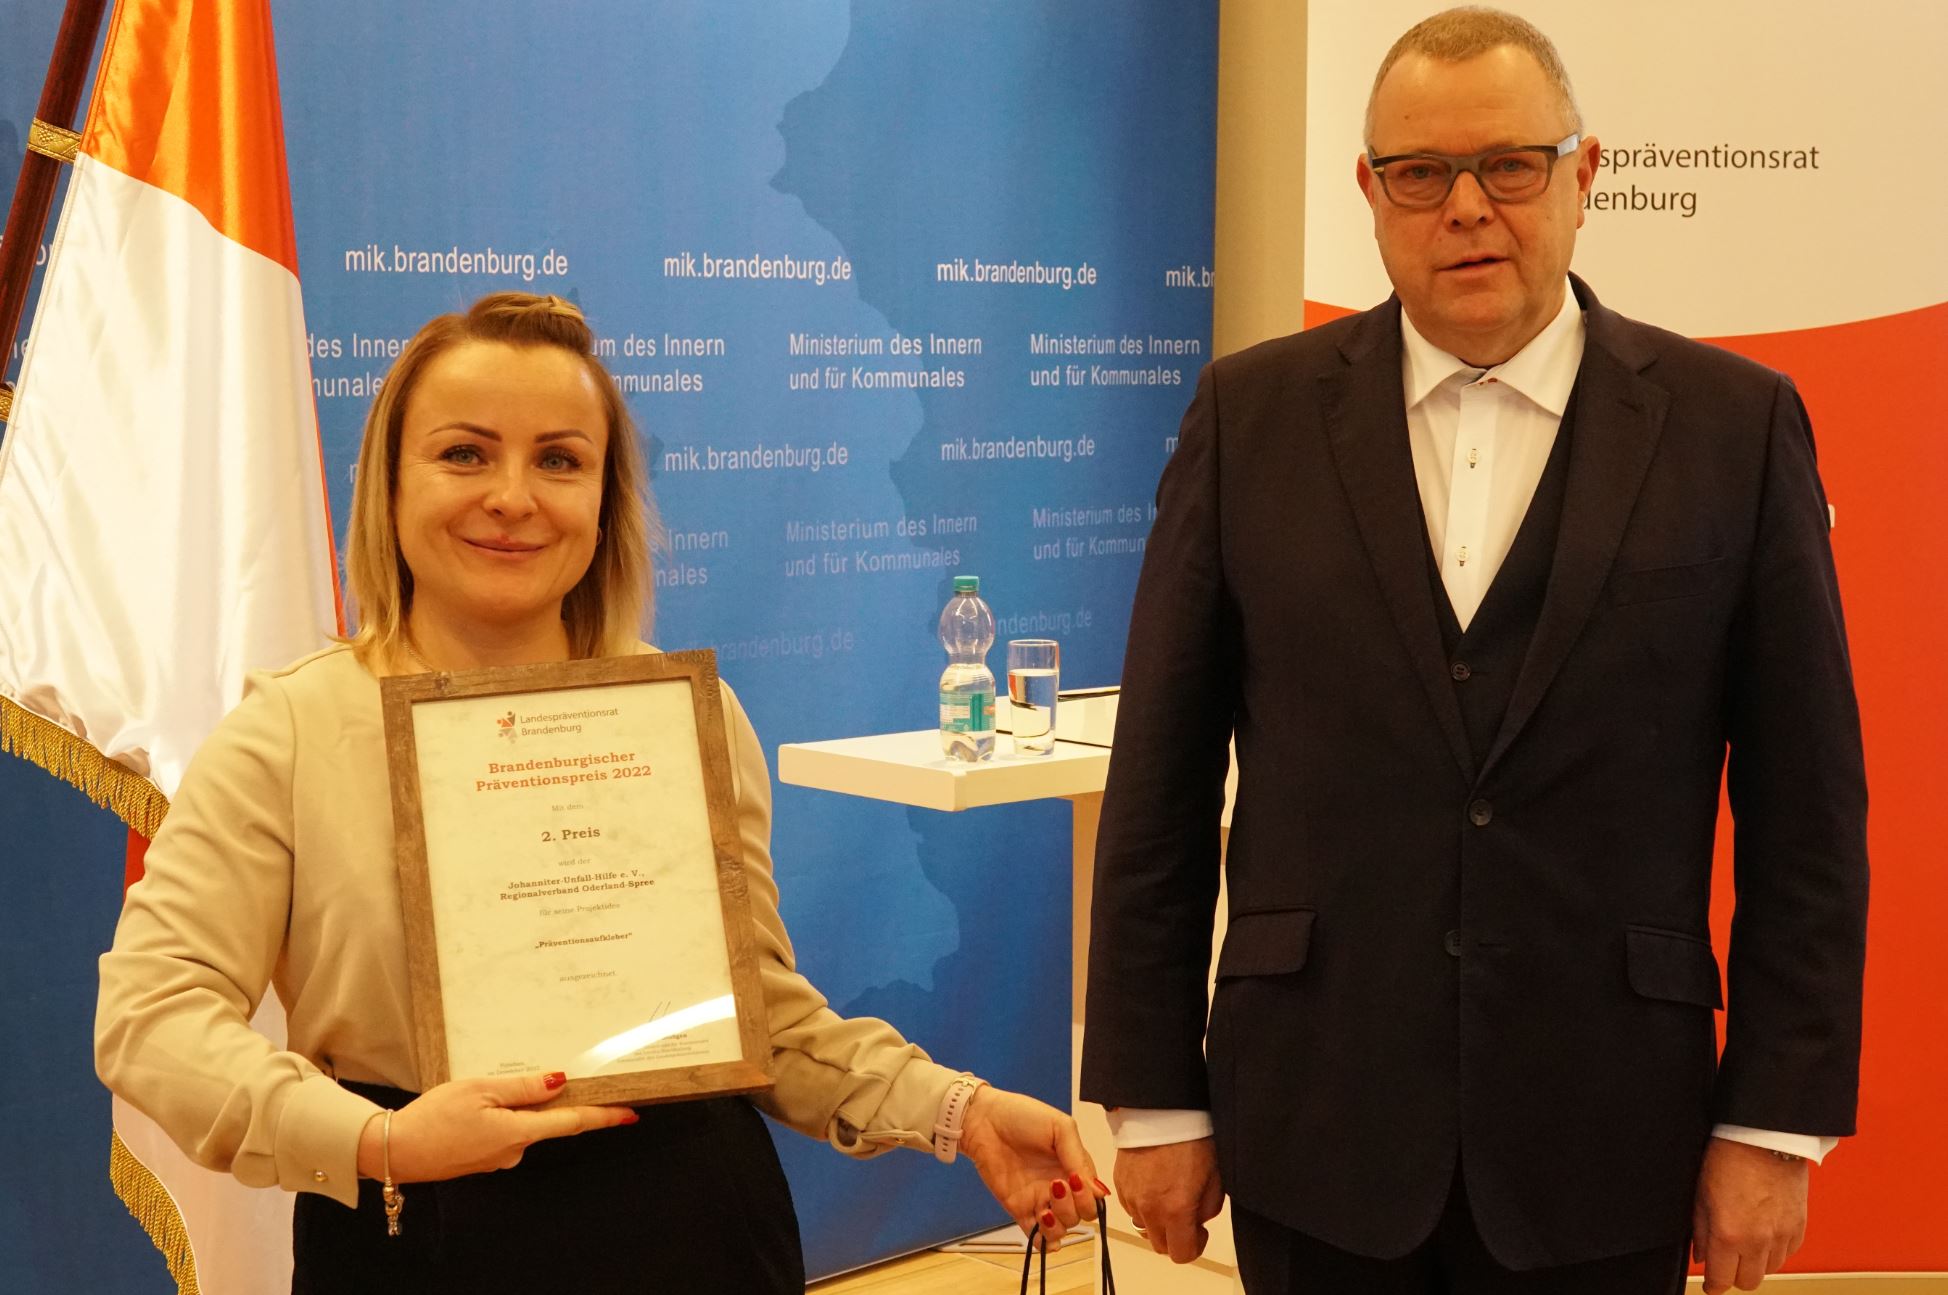 Verleihung Landespräventionspreis 2022 - Zweitplatzierte zusammen mit Innenminister Stübgen